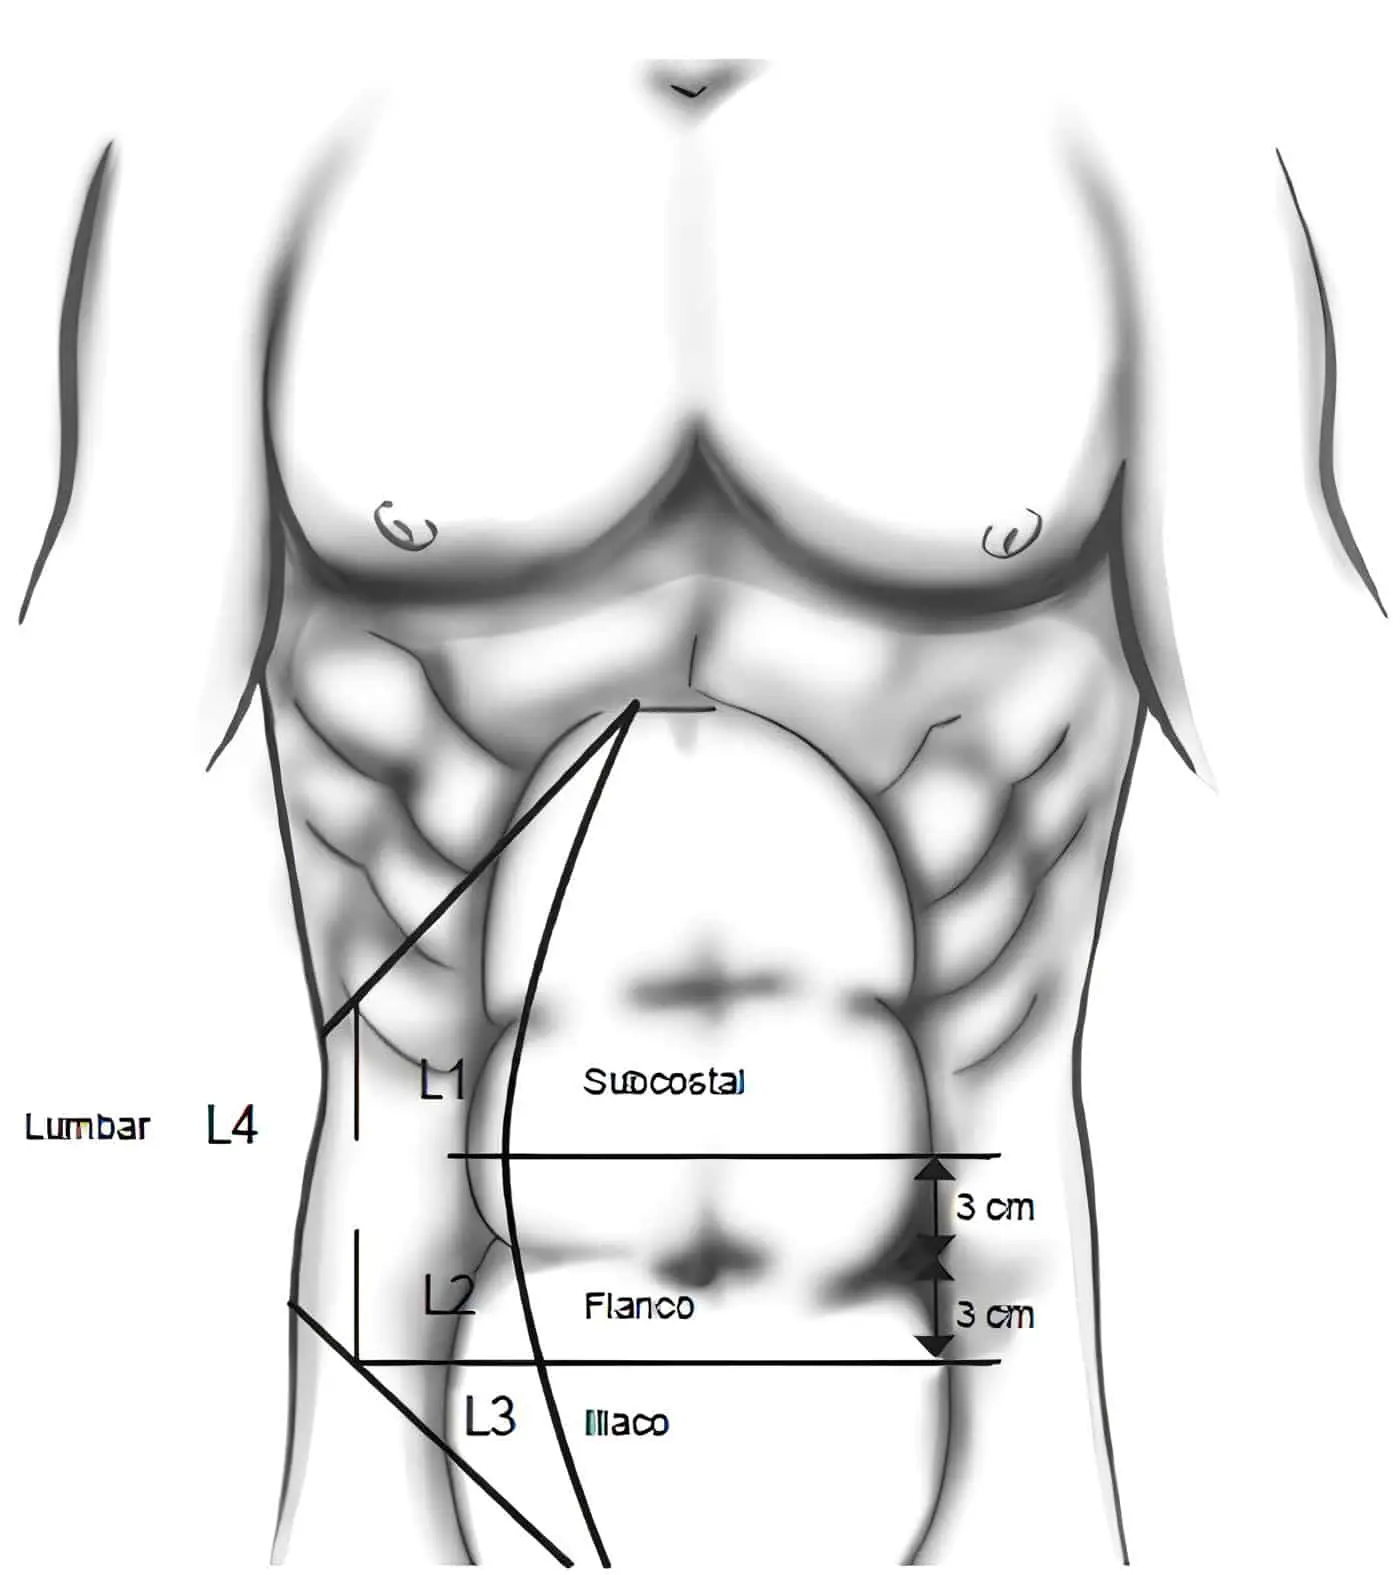 Clasificación de la distribución anatómica de las hernias laterales según la European Hernia Society